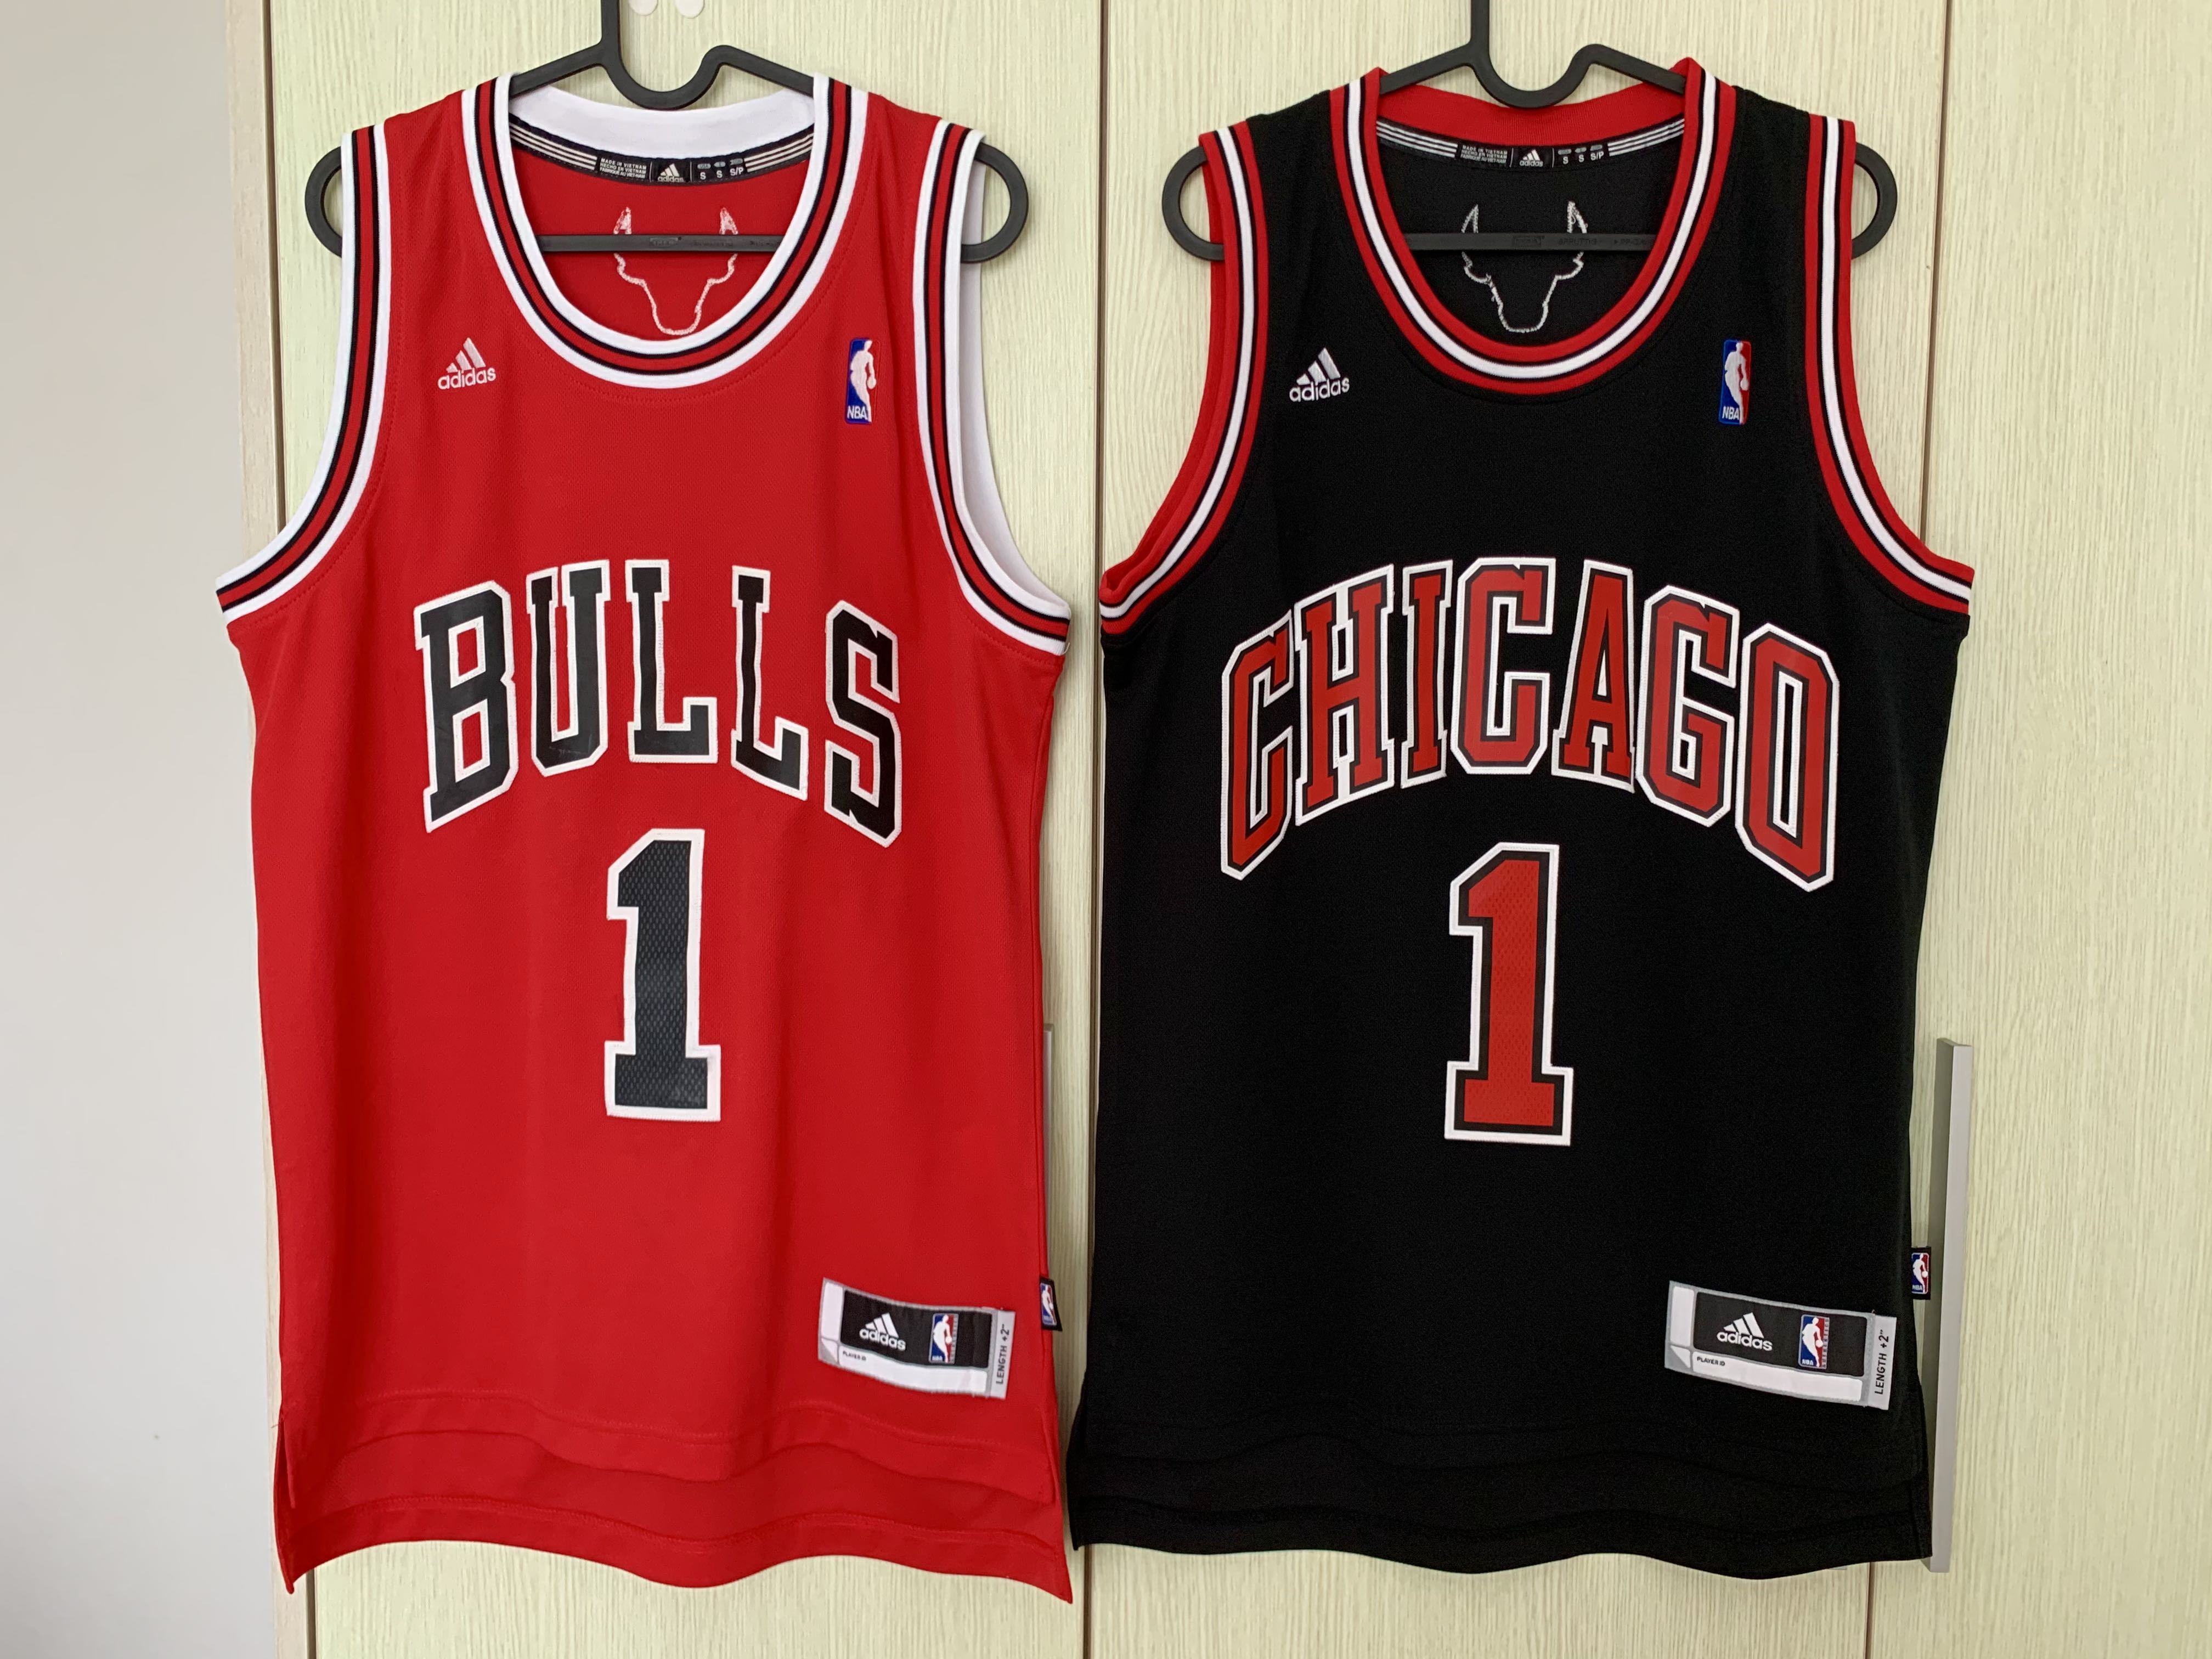 Jual Gratis Ongkir Jersey Basket Nba Original Bcc Chicago Bulls Rose di  Seller Hanisah Shop - Serua, Kota Depok